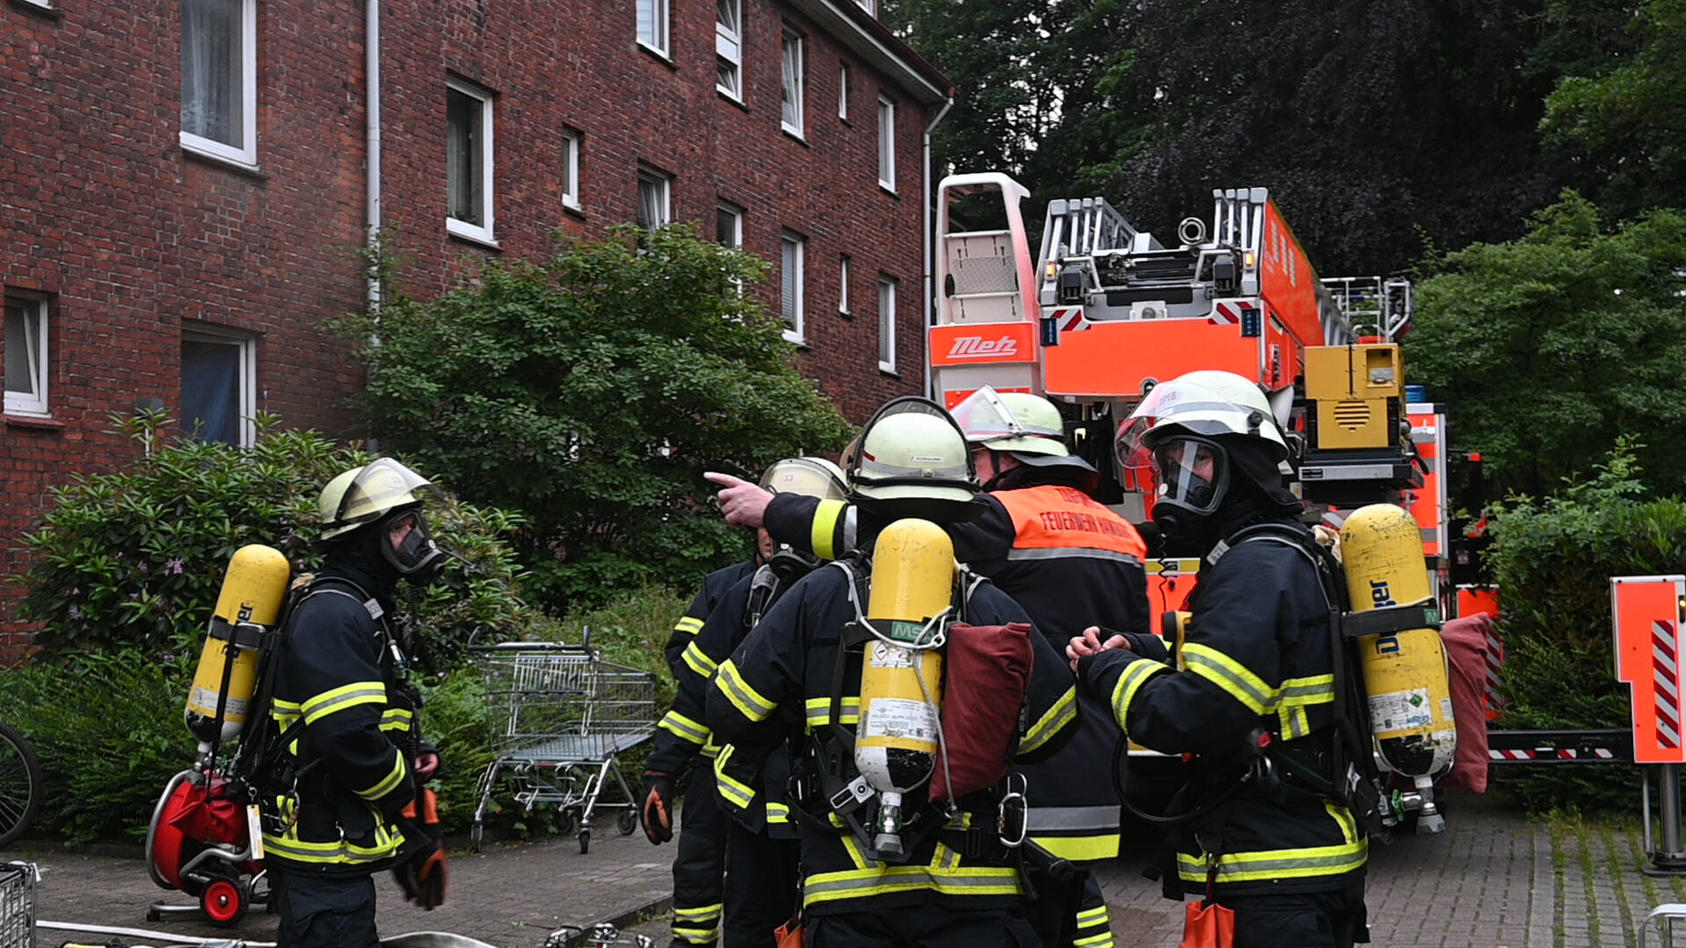  Acht Menschen wurden am Mittwochabend bei einem Feuer in der Rotenhäuser Straße in Wilhelmsburg verletzt. Nun ermittelt die Polizei wegen Brandstiftung. Gegen 20.30 Uhr rückte ein Großaufgebot der Feuerwehr zu dem Mehrfamilienhaus aus. Vor Ort brann